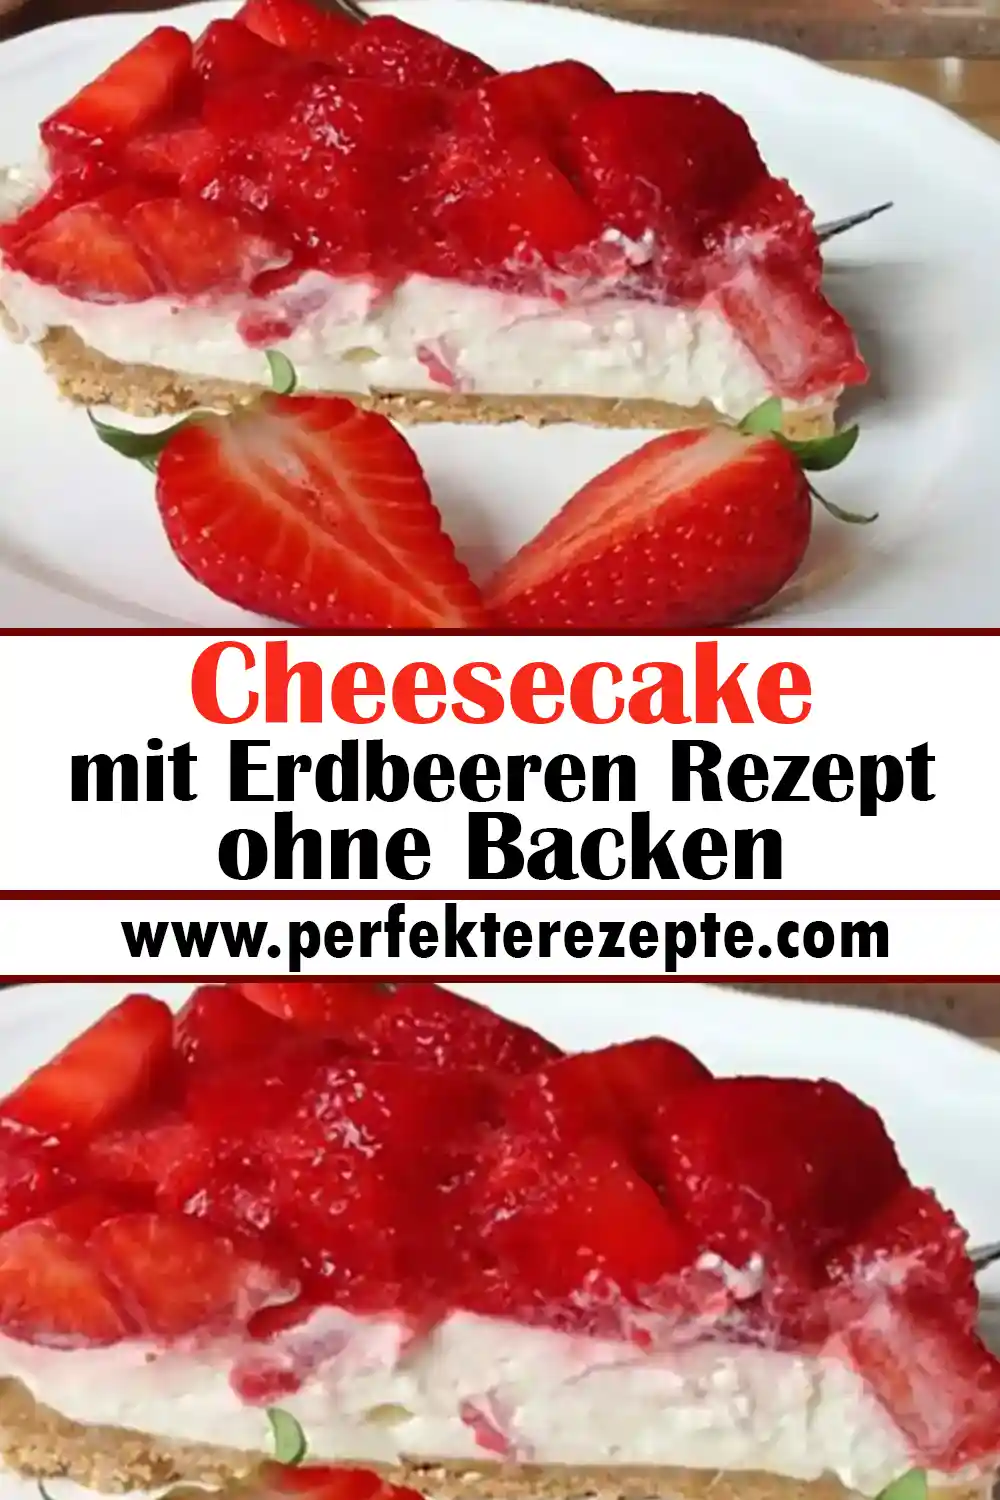 Cheesecake mit Erdbeeren ohne Backen Rezept